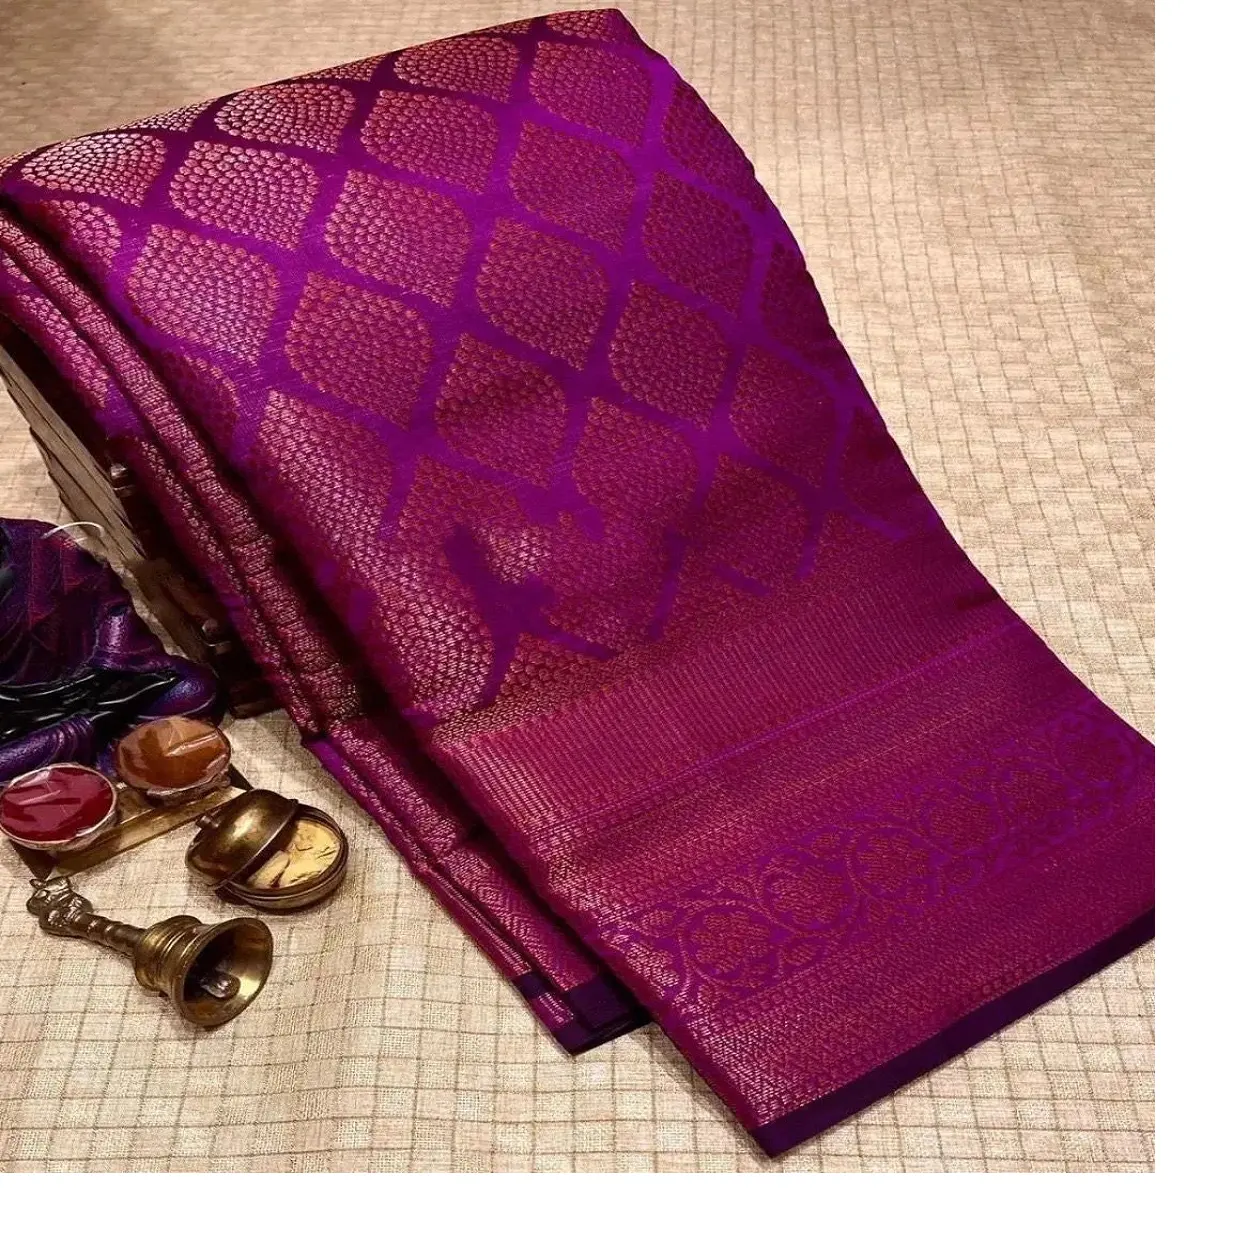 Fabriqué sur mesure dans de beaux saris en coton de soie lichi doux à base de couleur violette avec une bordure riche et un travail jacquard à des fins de revente